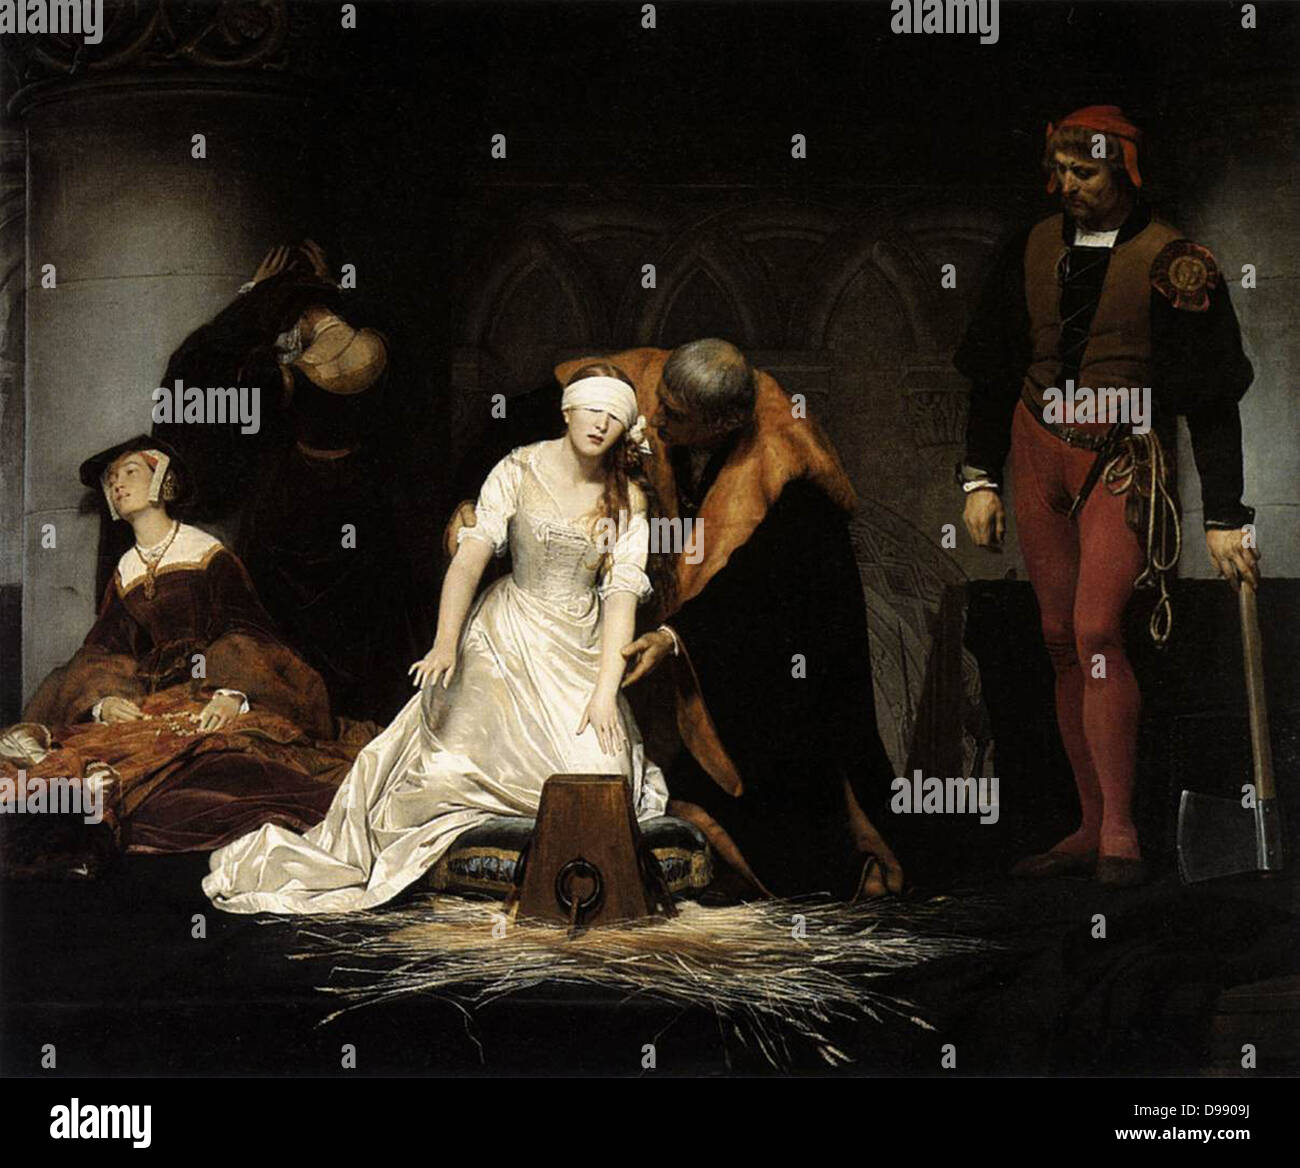 La ejecución de Lady Jane Grey" por Paul Delaroche 1833; Óleo sobre lienzo Foto de stock